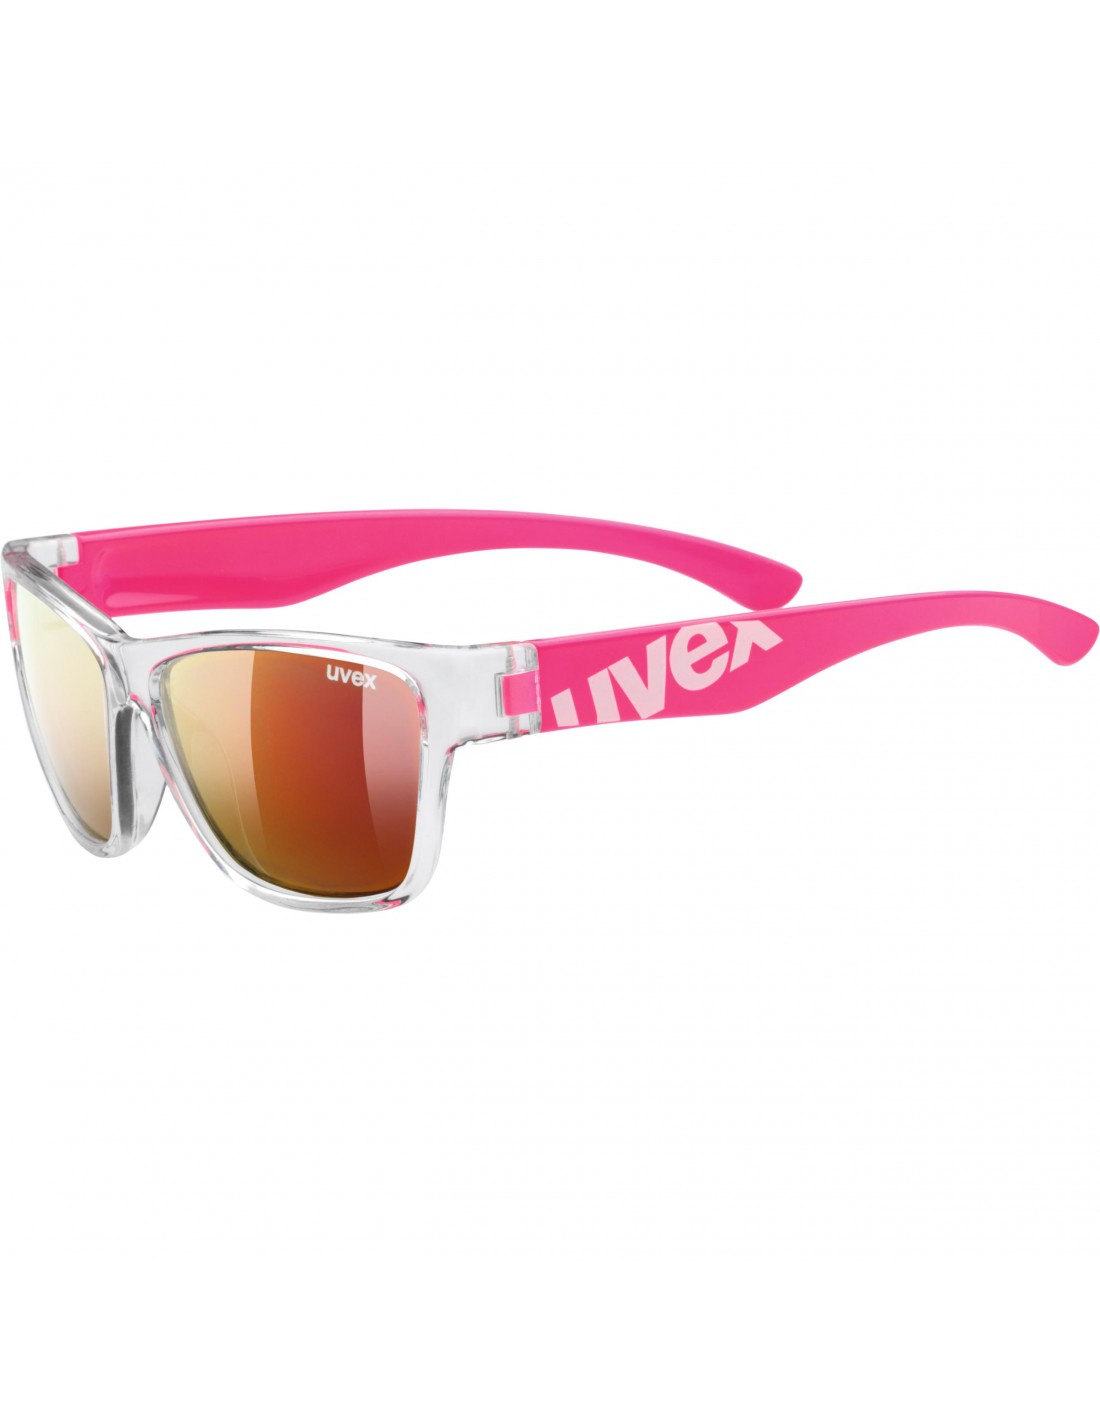 Gafas Uvex SportStyle para 508 rosa y transparente rojo